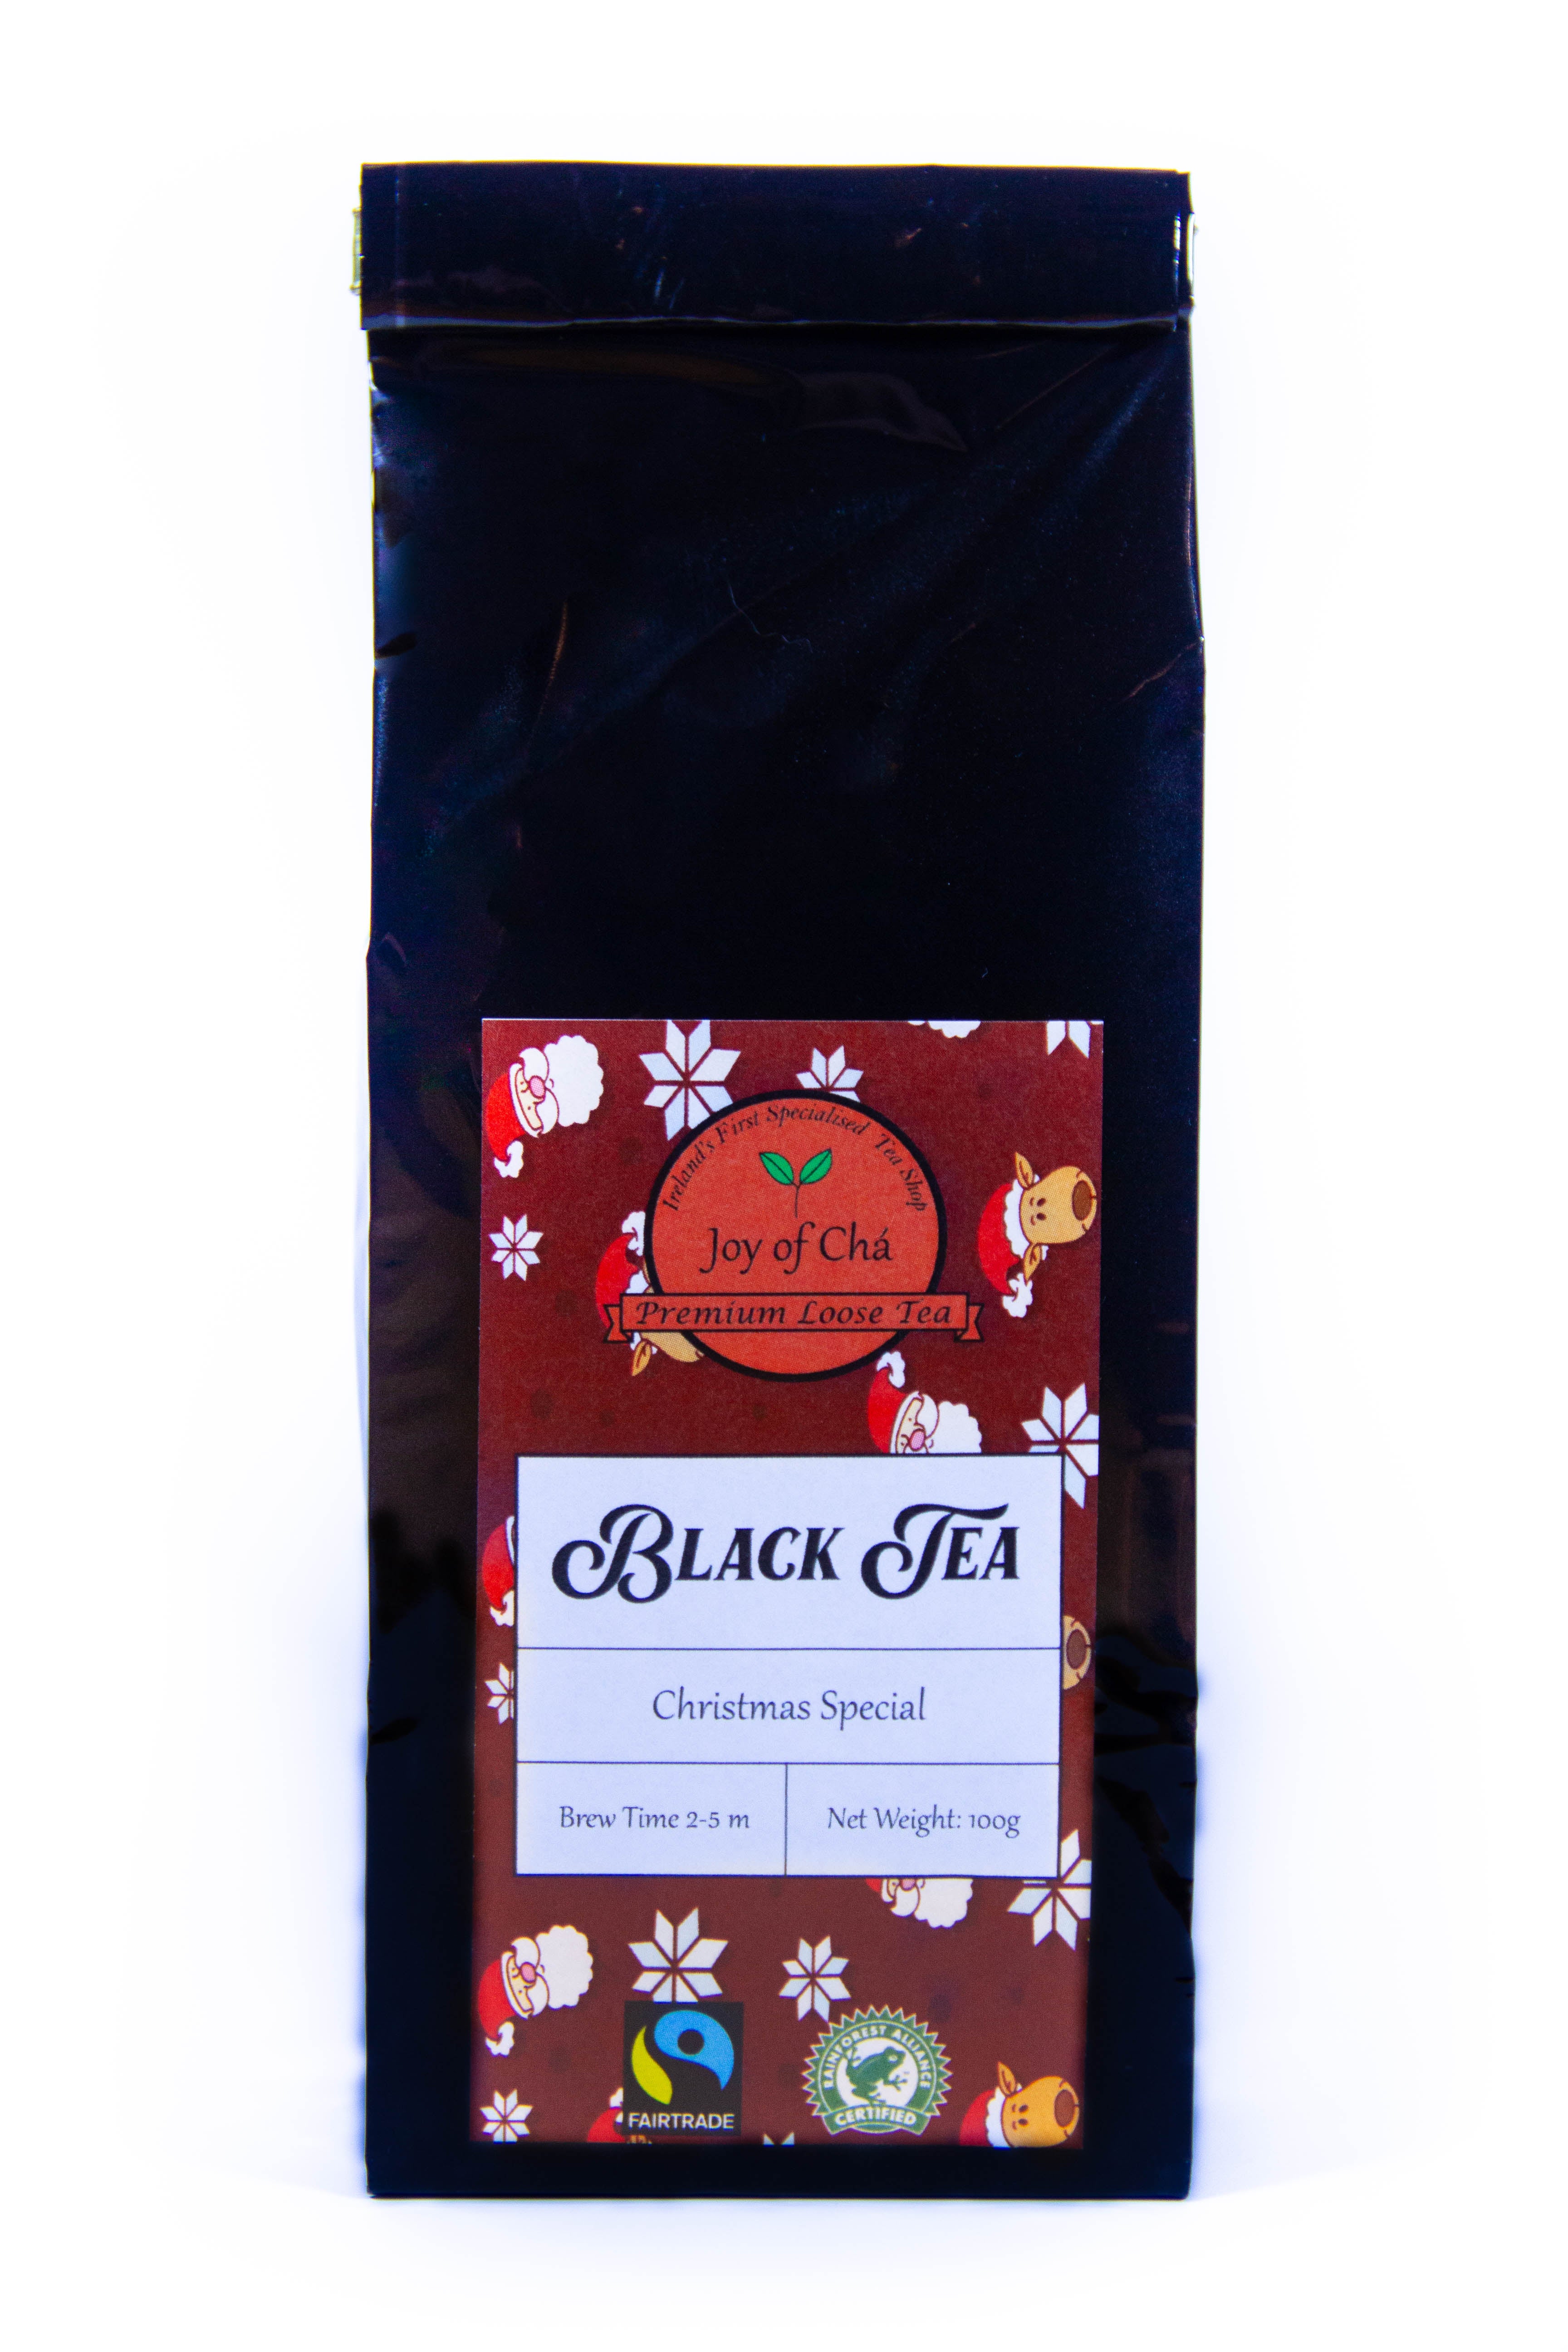 Special Christmas Black Tea